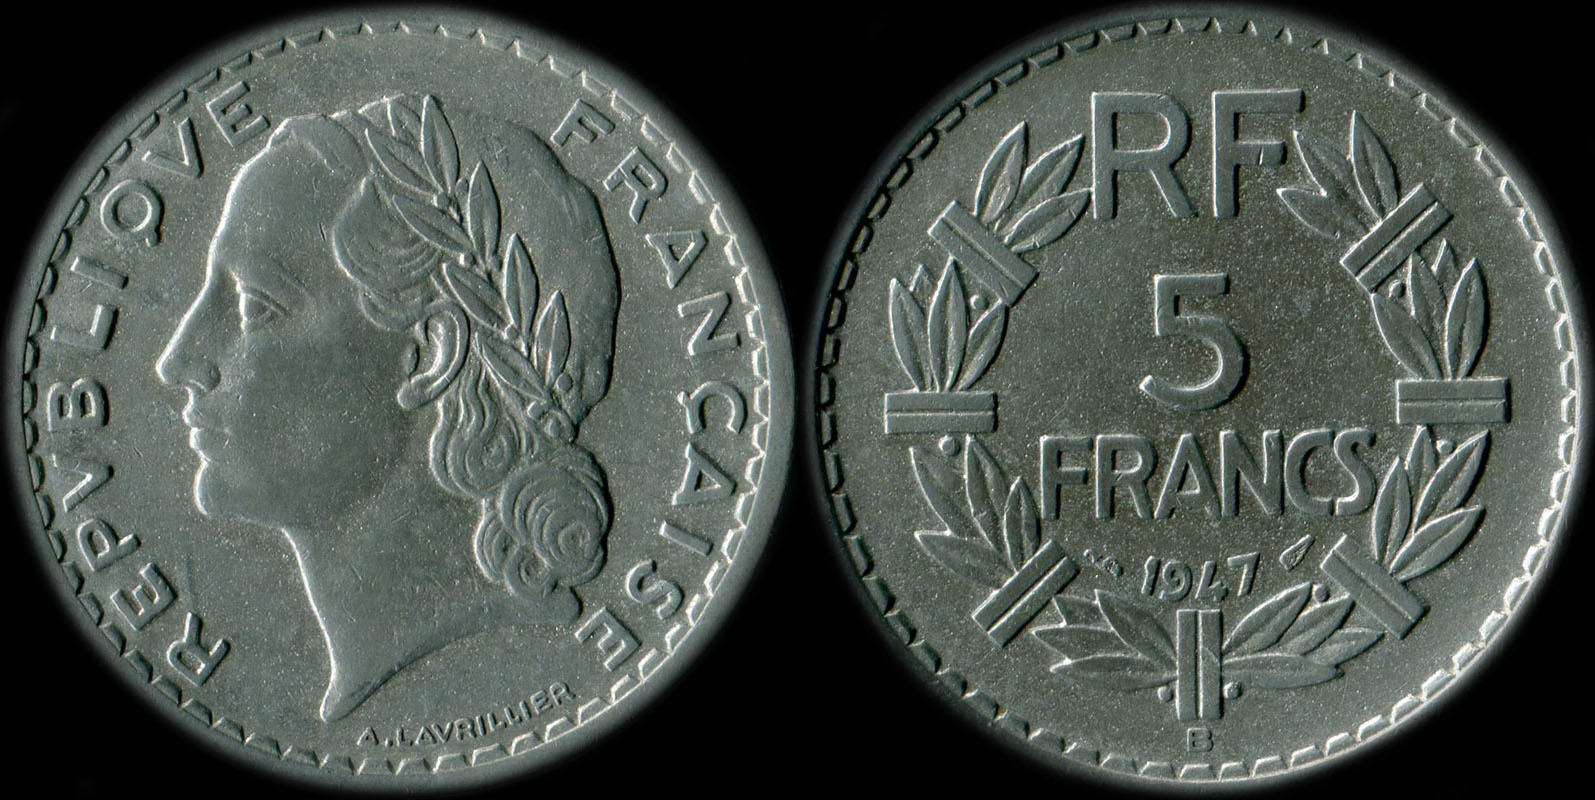 Pièce de 5 francs Lavrillier 1947 aluminium avec 9 ouvert